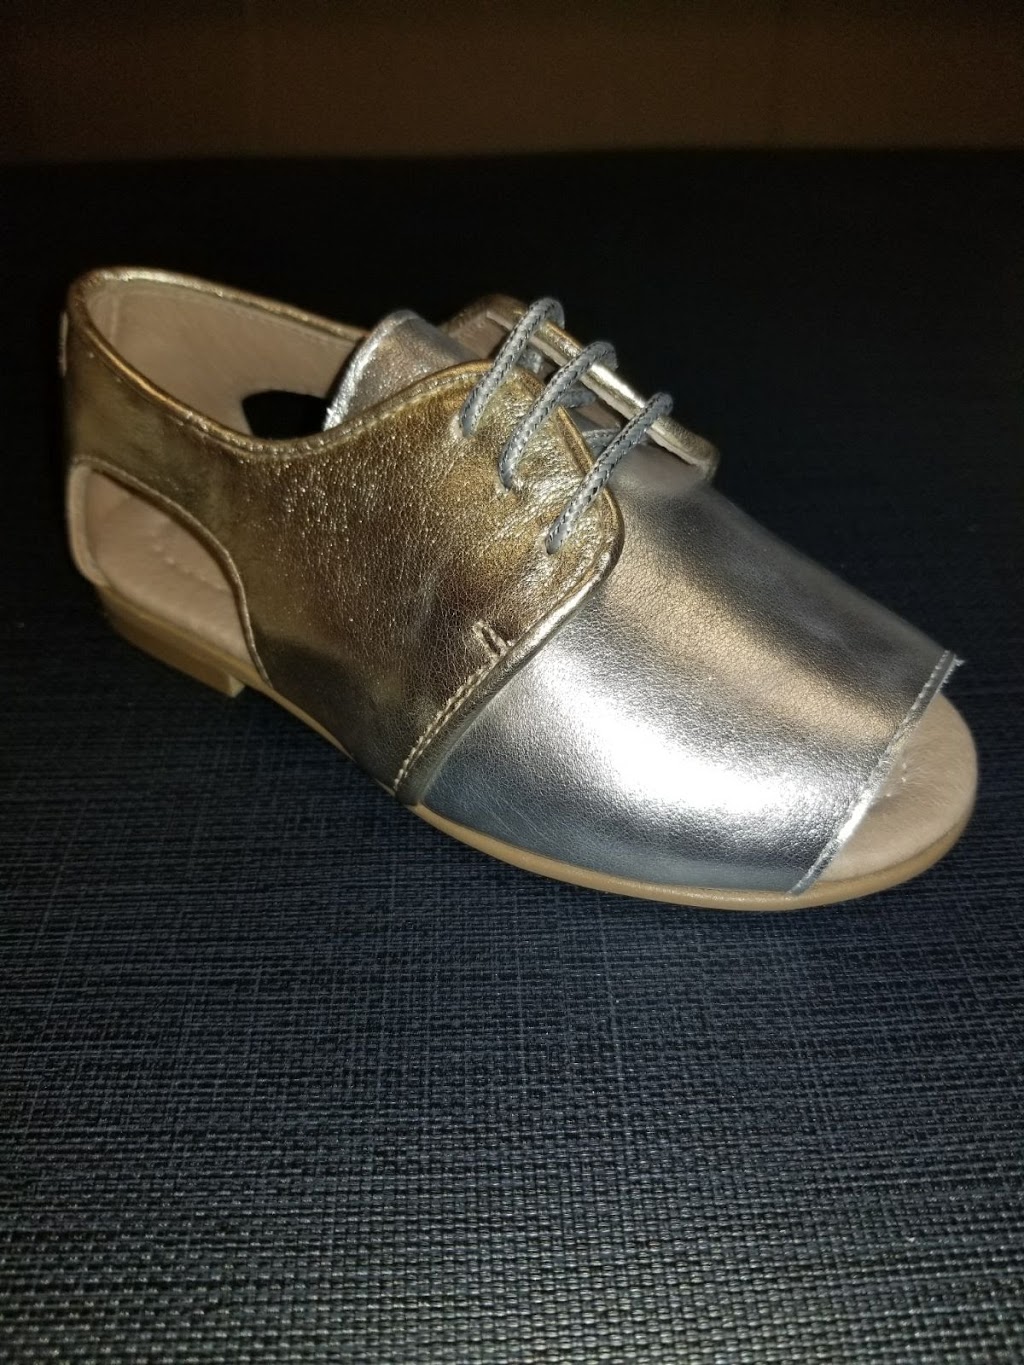 The Laced Shoe | 455 NY-306, Monsey, NY 10952 | Phone: (845) 533-2853